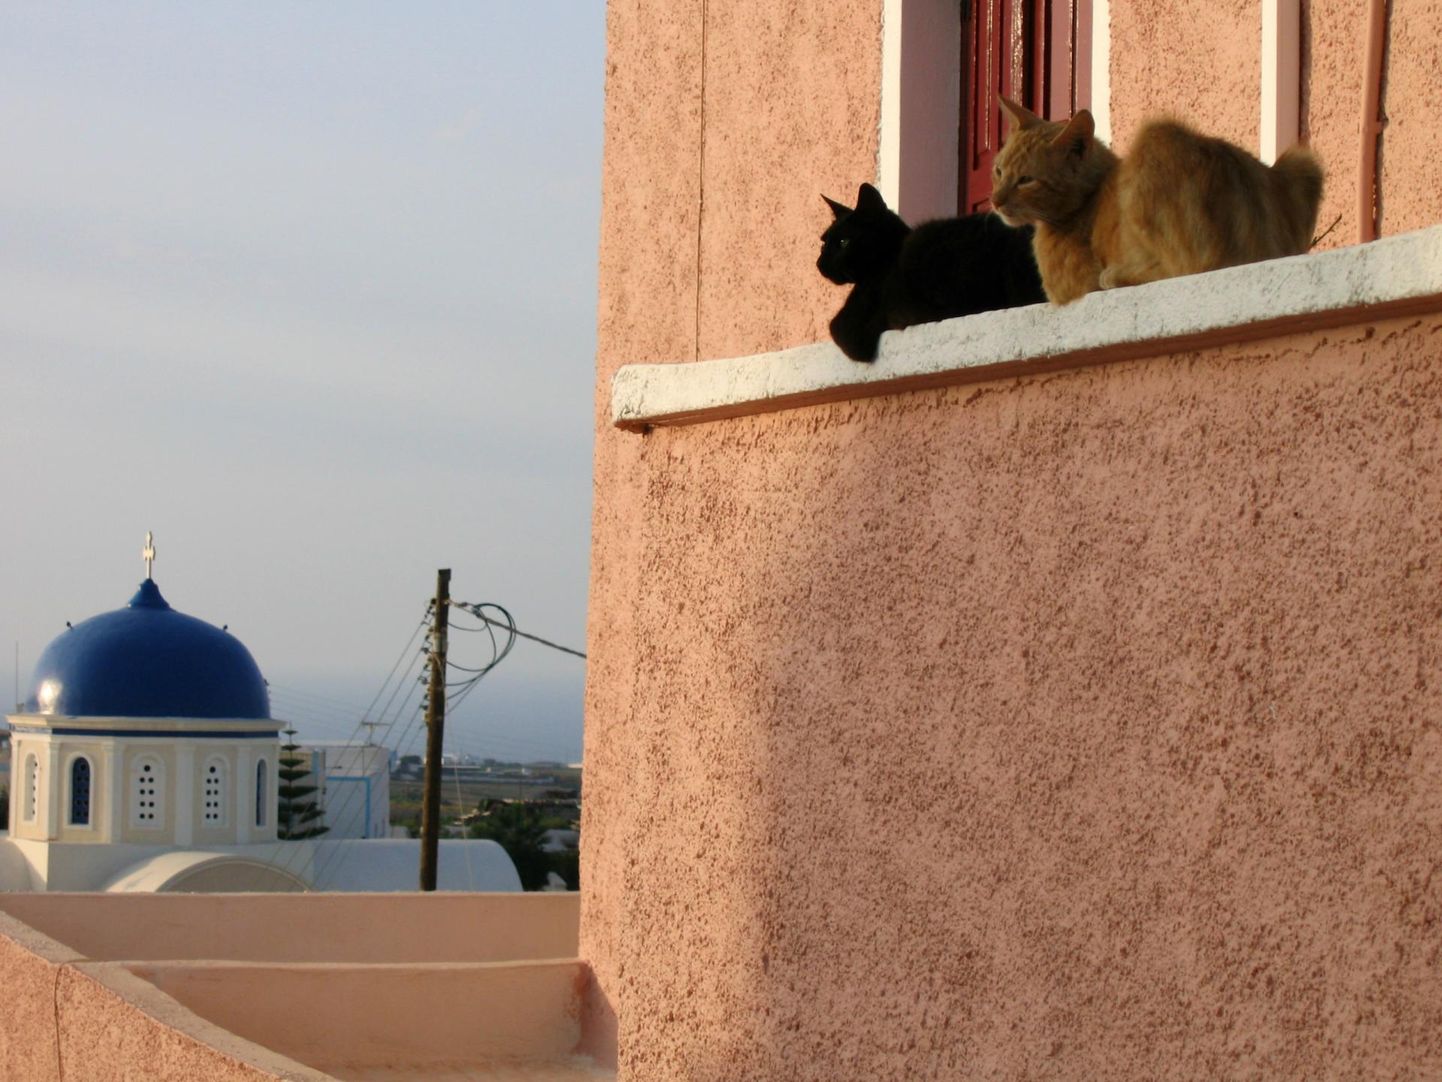 Juuni lõpuni saab Sakala keskuses näha Gert Kiileri näitust Santorini kassidest.